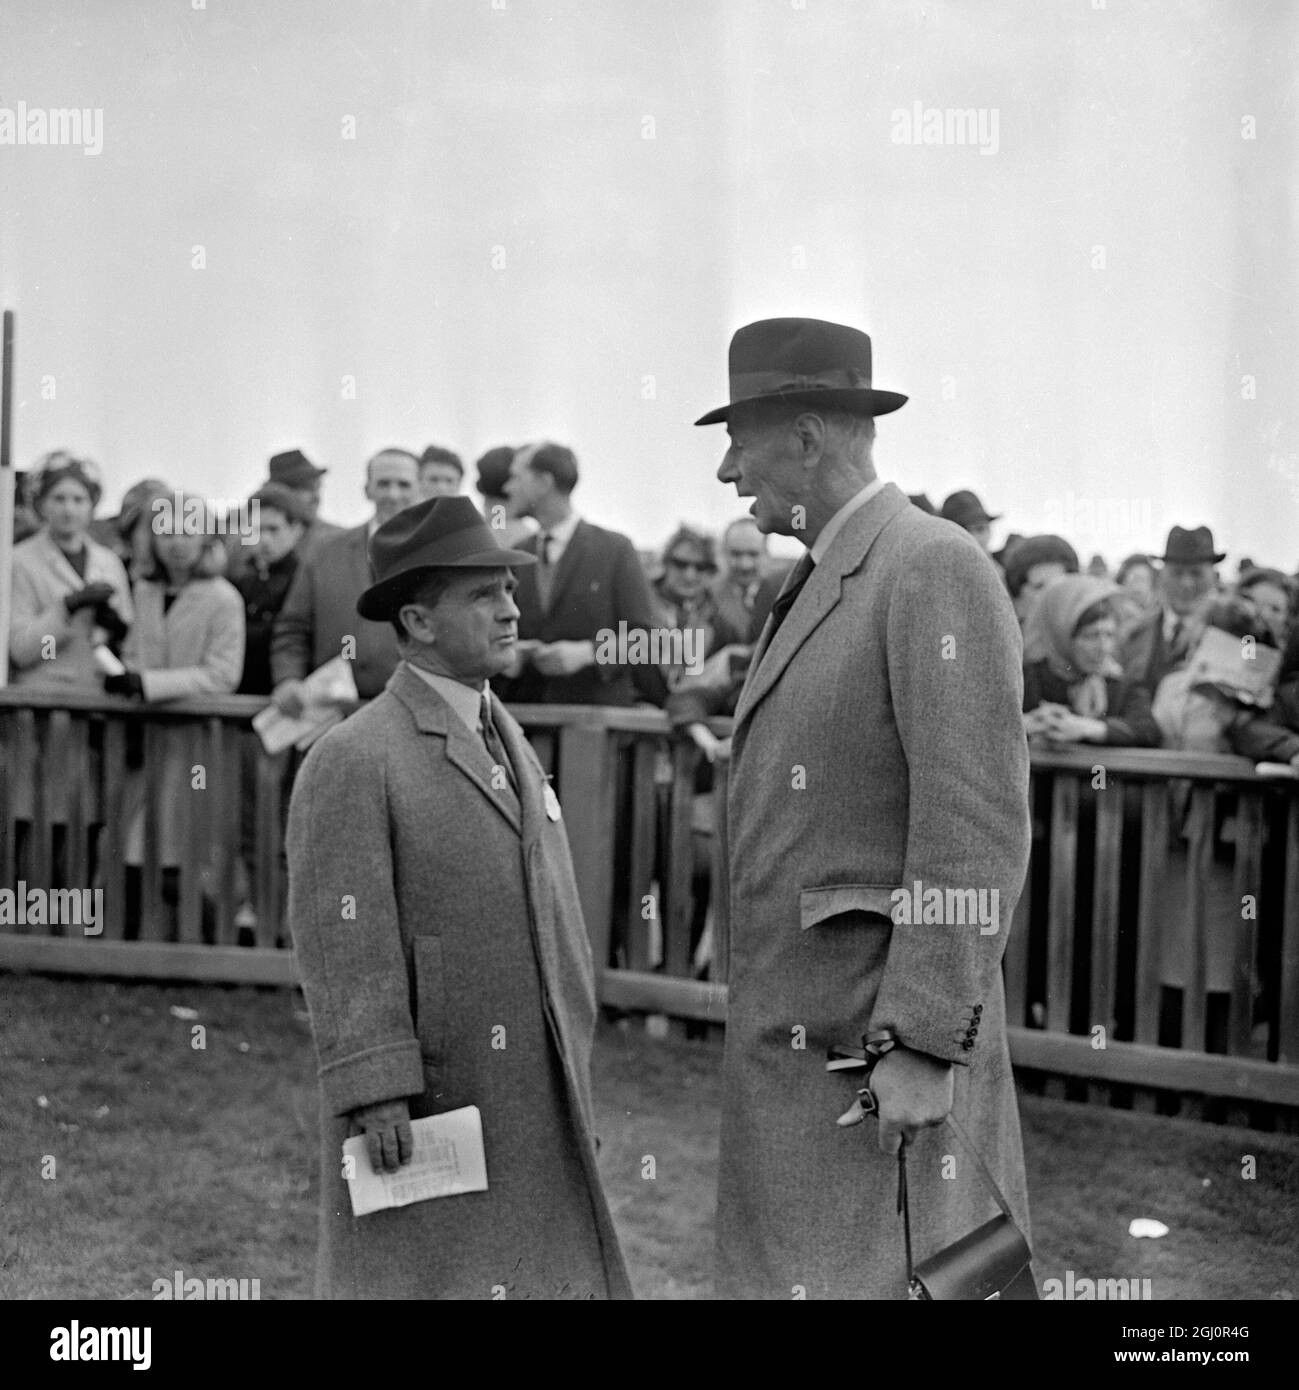 Gordon Richards (à gauche), ancien champion Jockey devenu entraîneur, parle avec Noel Murless lors d'une rencontre de course à Newmarket. M. Murless a attristés le projet plein d'espoir de gagner les enjeux de Wood Ditton pour sa Majesté la reine Elizabeth II 20 avril 1967 Banque D'Images